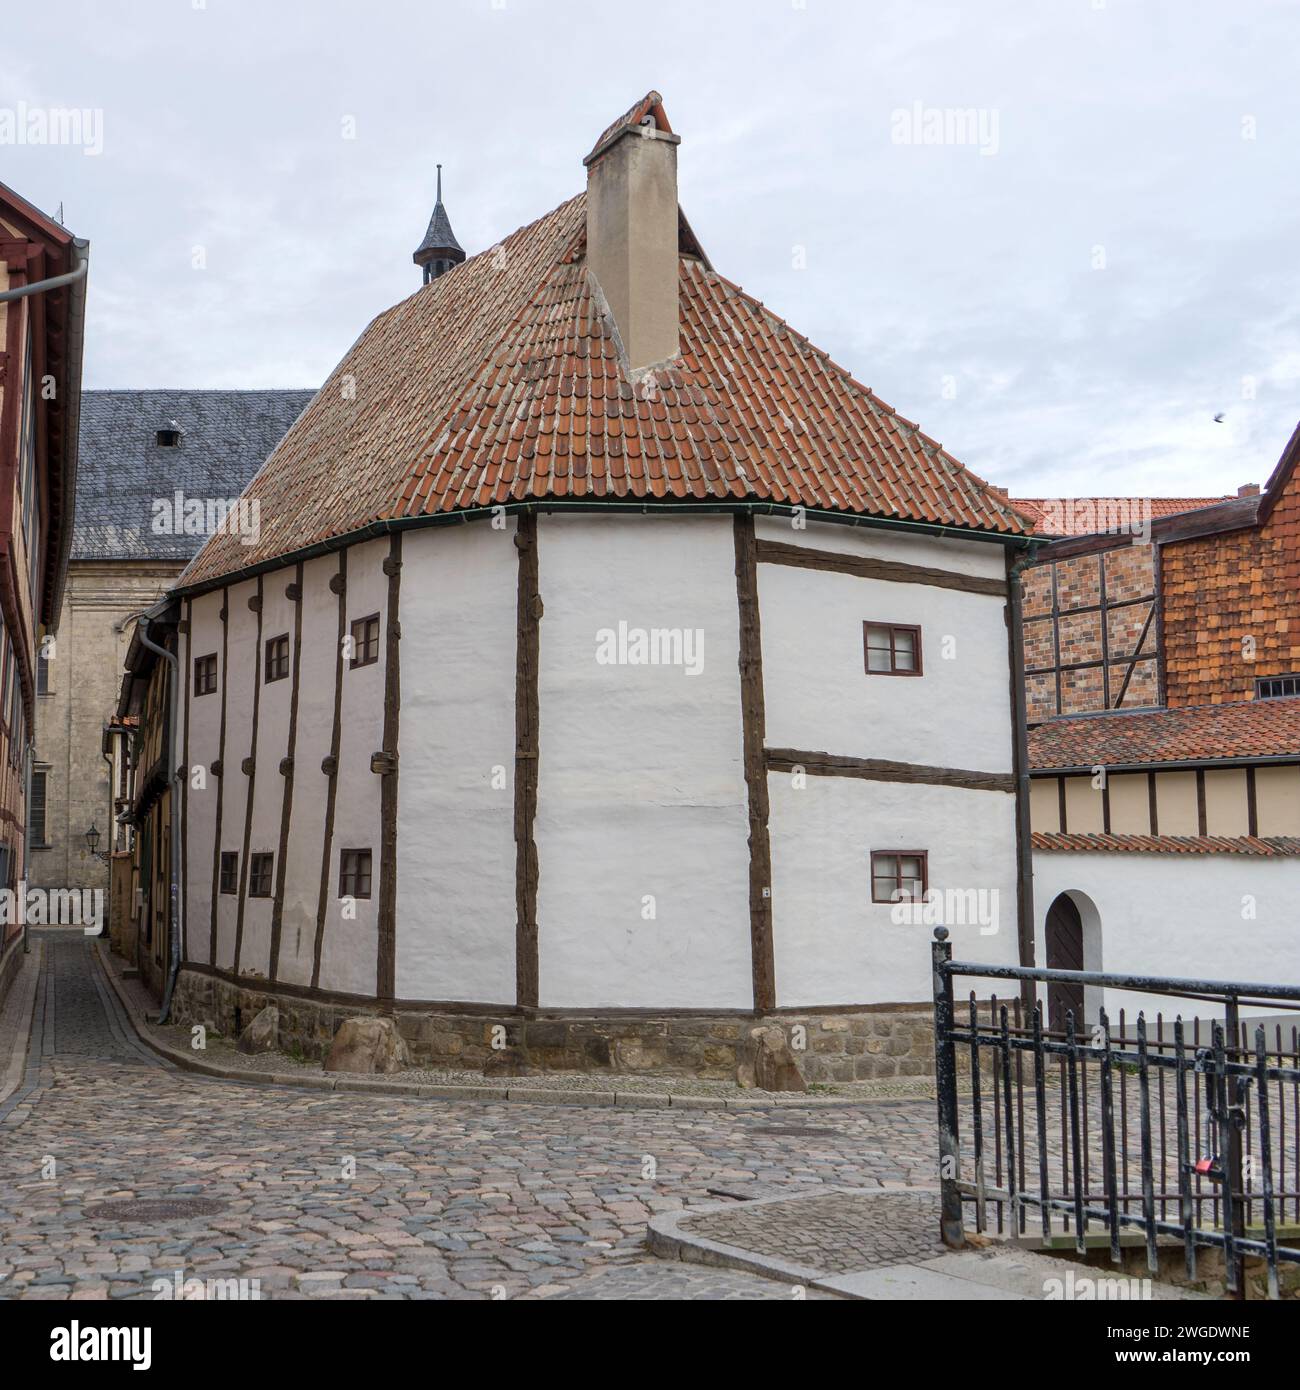 Maison historique à colombages, site du patrimoine mondial de l'UNESCO et musée à colombages à Quedlinburg, Saxe-Anhalt, Allemagne Banque D'Images